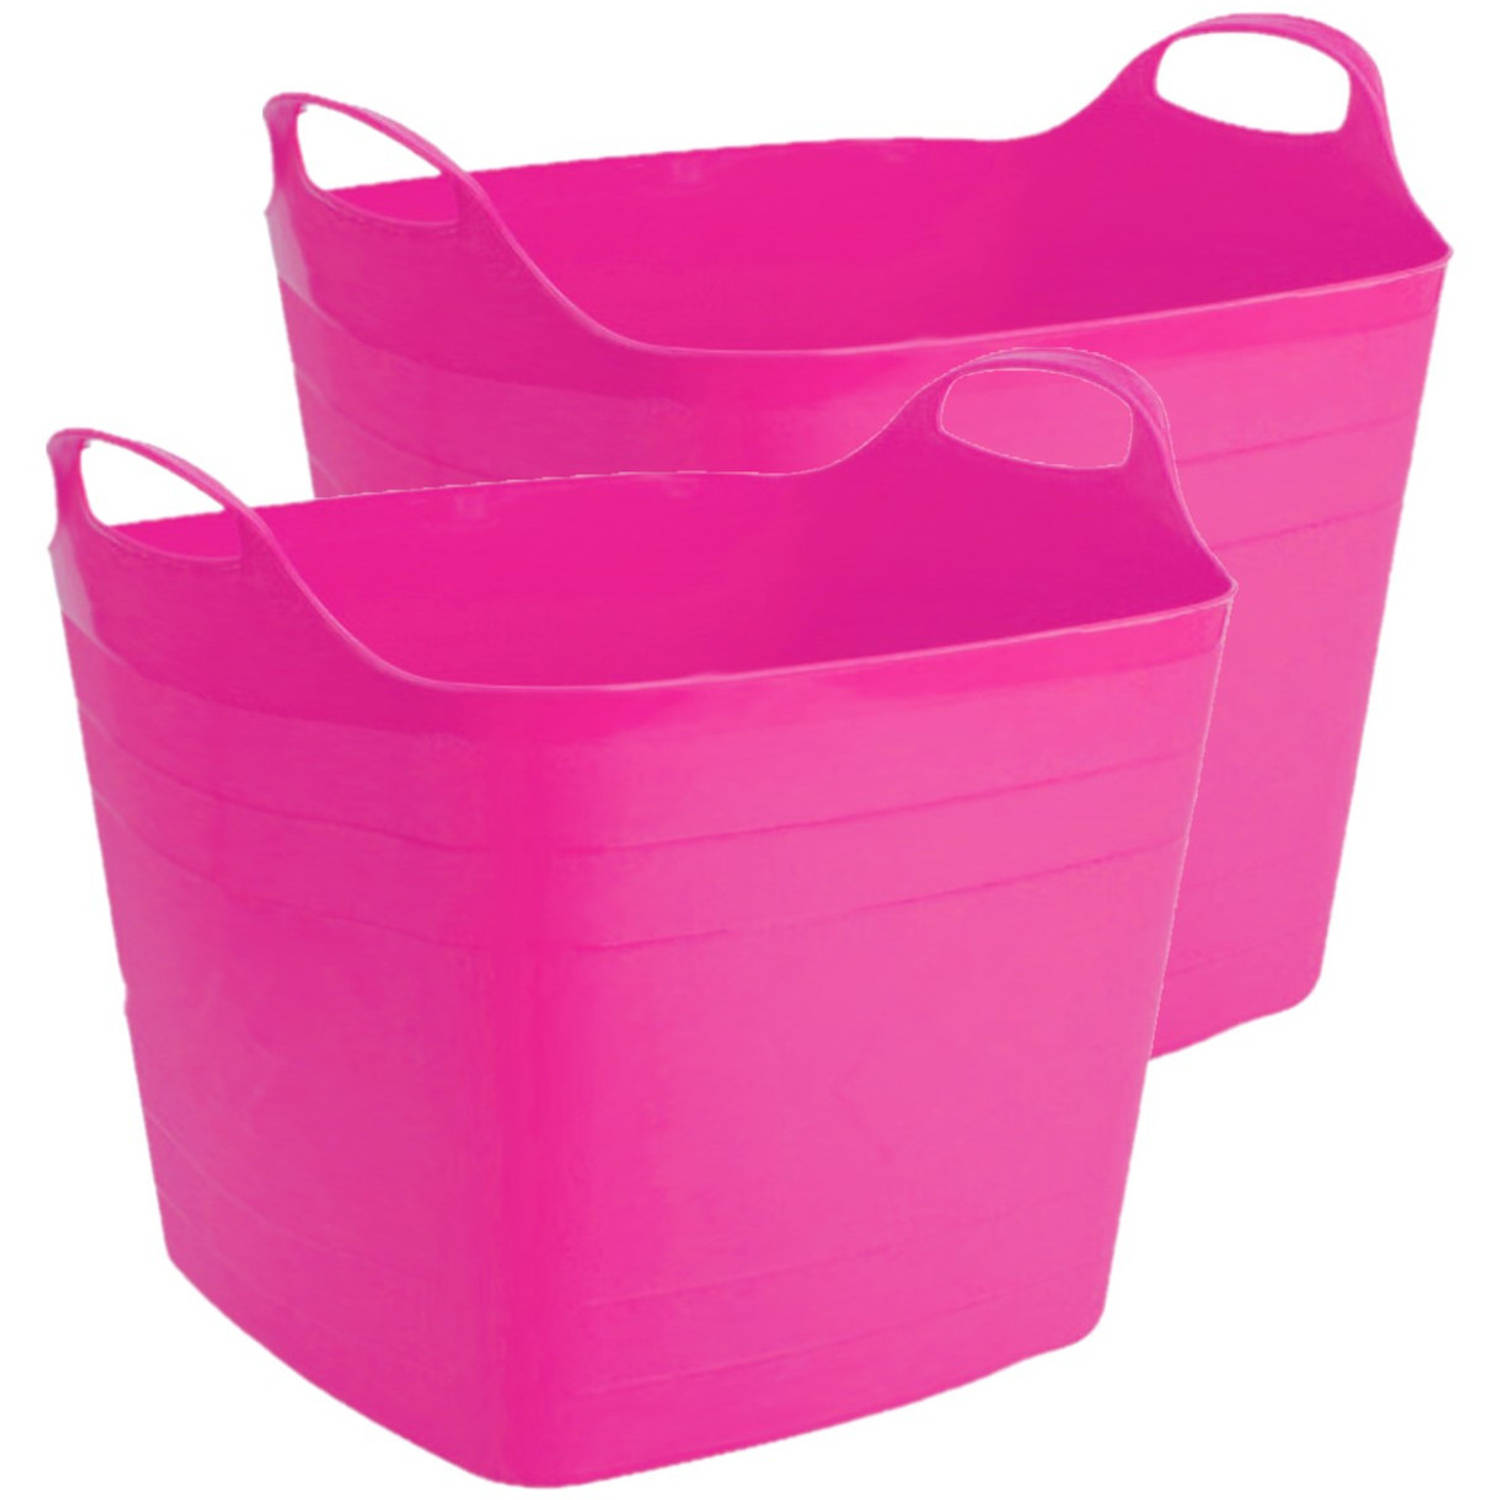 Herinnering Oproepen artikel 2x stuks flexibele kuip emmer/wasmand vierkant fuchsia roze 40 liter -  Wasmanden | Blokker